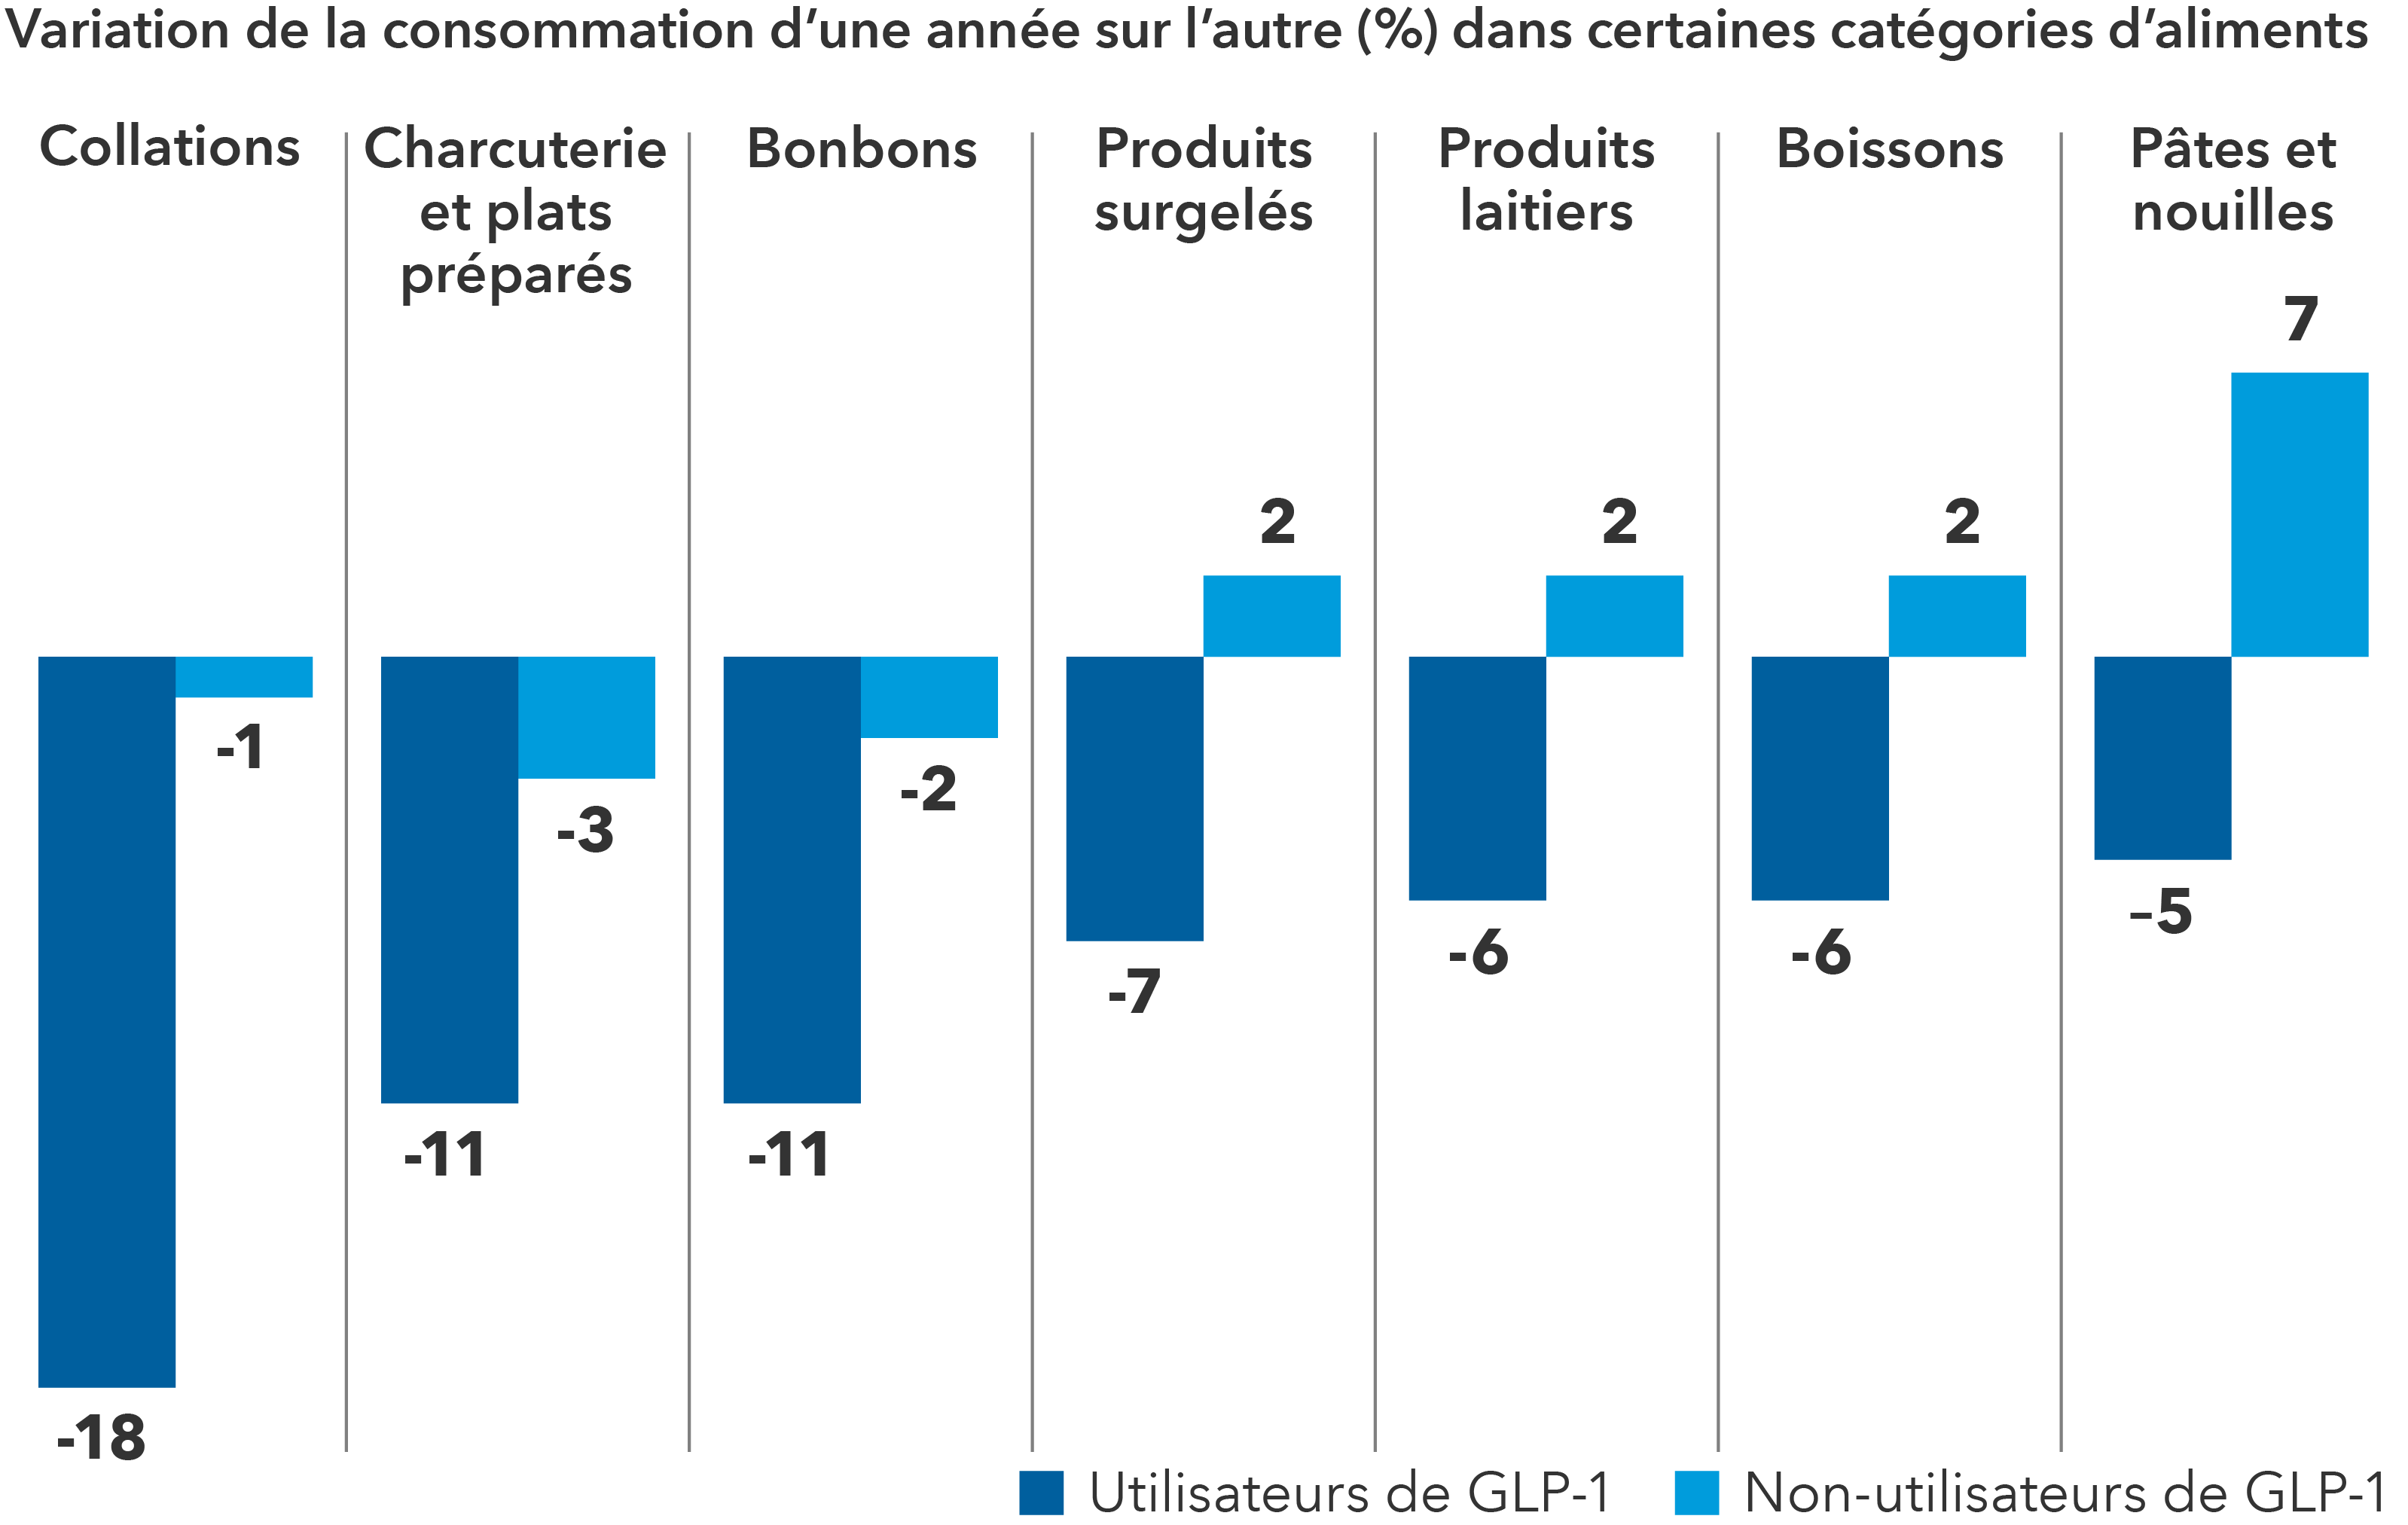 Le diagramme à barres ci-dessus illustre les changements d’une année sur l’autre dans la consommation des différentes catégories d’aliments pour les utilisateurs de GLP-1 en bleu et les non-utilisateurs de GLP en bleu clair. Pour ce qui est des collations, les utilisateurs de GLP-1 ont enregistré une baisse de 18 %, contre 1 % pour les non-utilisateurs de GLP-1. Pour les charcuteries et les viandes préparées, les utilisateurs de GLP-1 ont enregistré une baisse de 11 % contre 3 % pour les non-utilisateurs de GLP-1. Pour les confiseries, les utilisateurs de GLP-1 ont enregistré une baisse de 11 % contre 2 % pour les non-utilisateurs de GLP-1. Pour les produits surgelés, les utilisateurs de GLP-1 ont enregistré une baisse de 7 % contre une augmentation de 2 % pour les non-utilisateurs de GLP-1. Pour les produits laitiers, les utilisateurs de GLP-1 ont enregistré une baisse de 6 % contre une augmentation de 2 % pour les non-utilisateurs de GLP-1. Pour les boissons, les utilisateurs de GLP-1 ont enregistré une baisse de 6 % contre une augmentation de 2 % pour les non-utilisateurs de GLP-1. Pour les pâtes et les nouilles, les utilisateurs de GLP-1 ont enregistré une baisse de 5 % contre une augmentation de 7 % pour les non-utilisateurs de GLP-1.